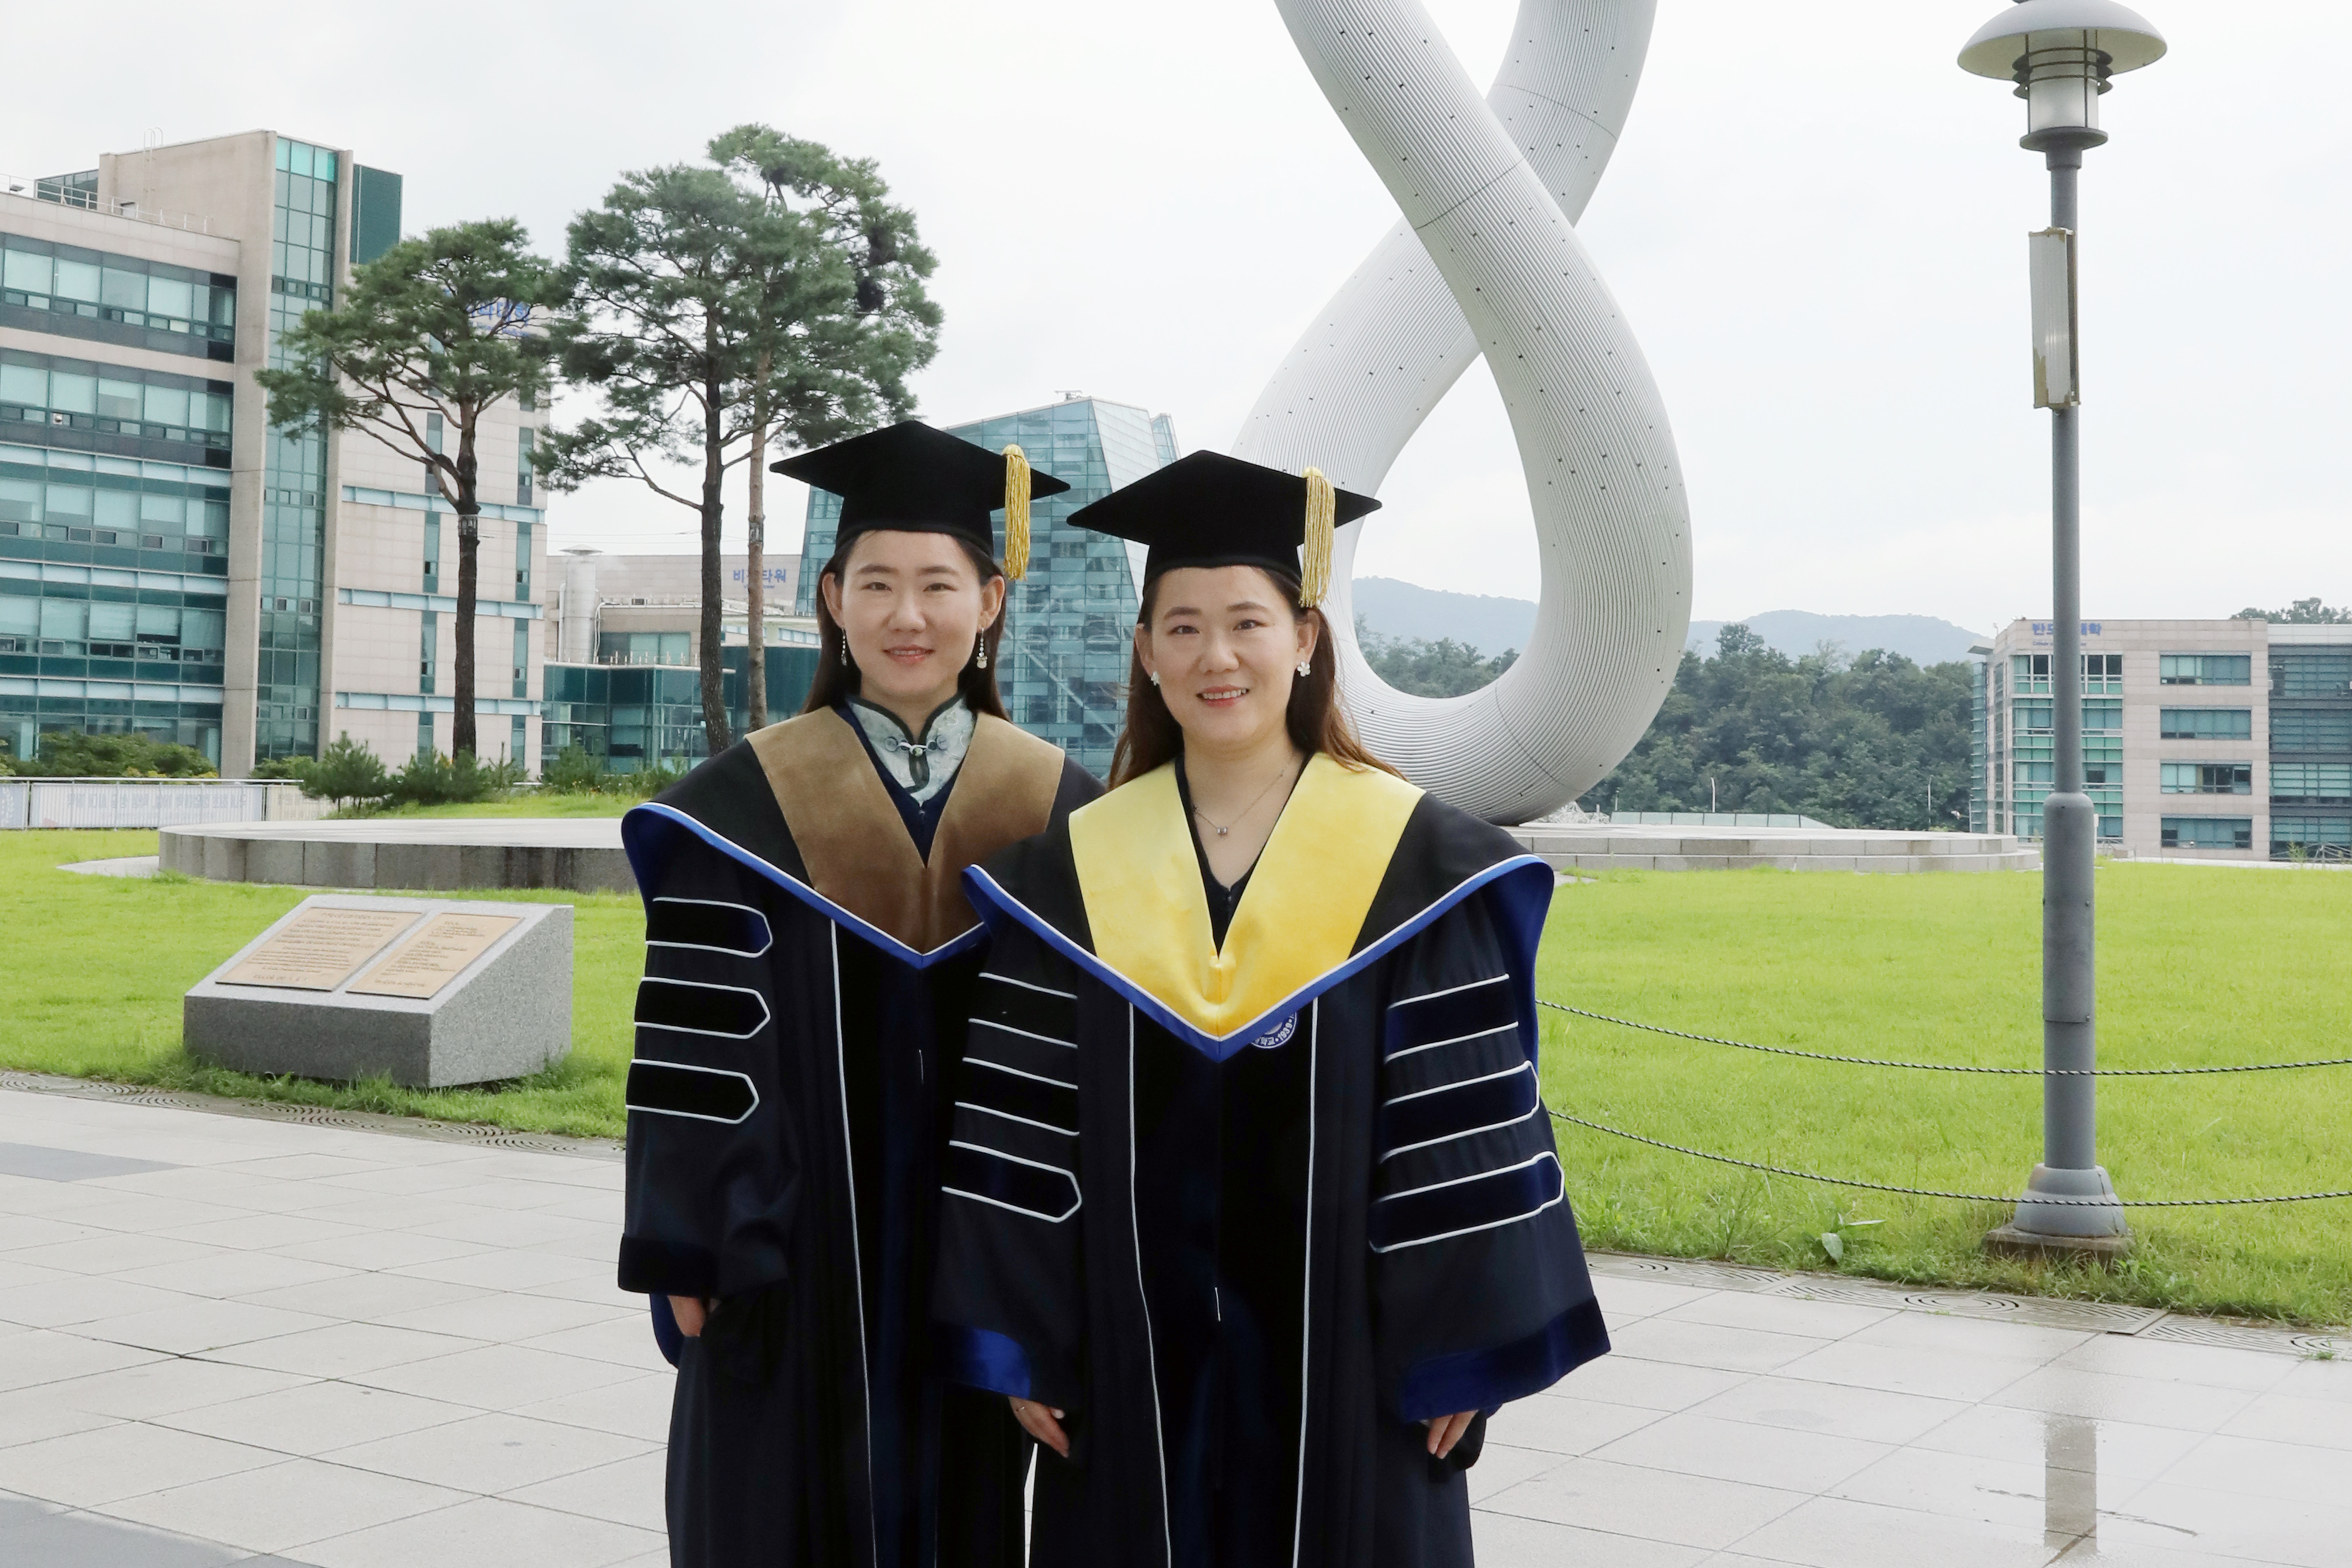 오는 24일 가천대에서 나란히 박사학위를 받는 중국인 쌍둥이 유학생인 언니 유하이징(왼쪽)과 동생 유하이닝(오른쪽)이 대학 가천관 잔디광장에서 학위복을 입고 기념사진을 촬영하고 있다. 가천대 제공